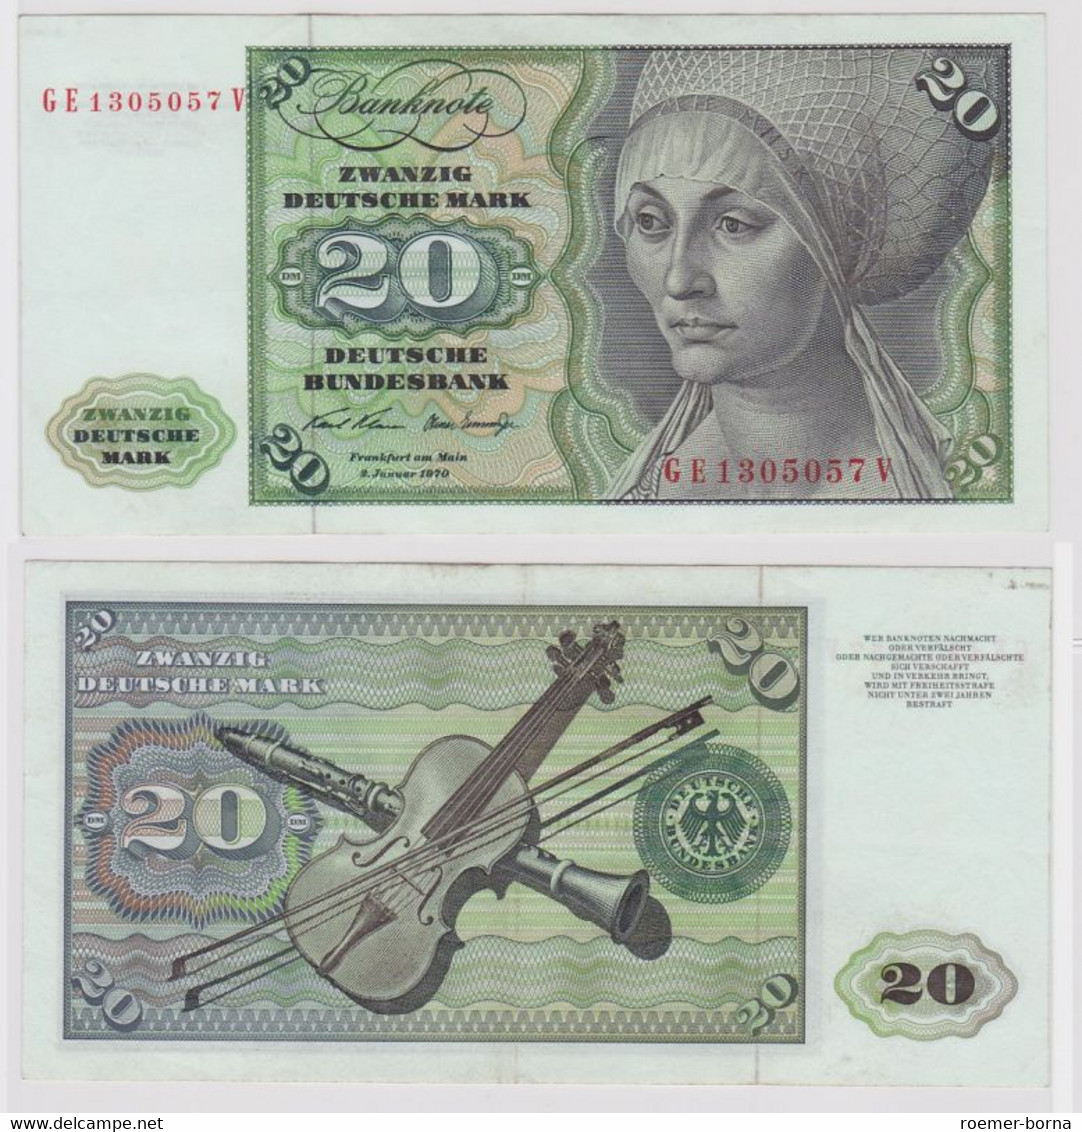 T148152 Banknote 20 DM Deutsche Mark Ro. 271b Schein 2.Jan. 1970 KN GE 1305057 V - 20 Deutsche Mark